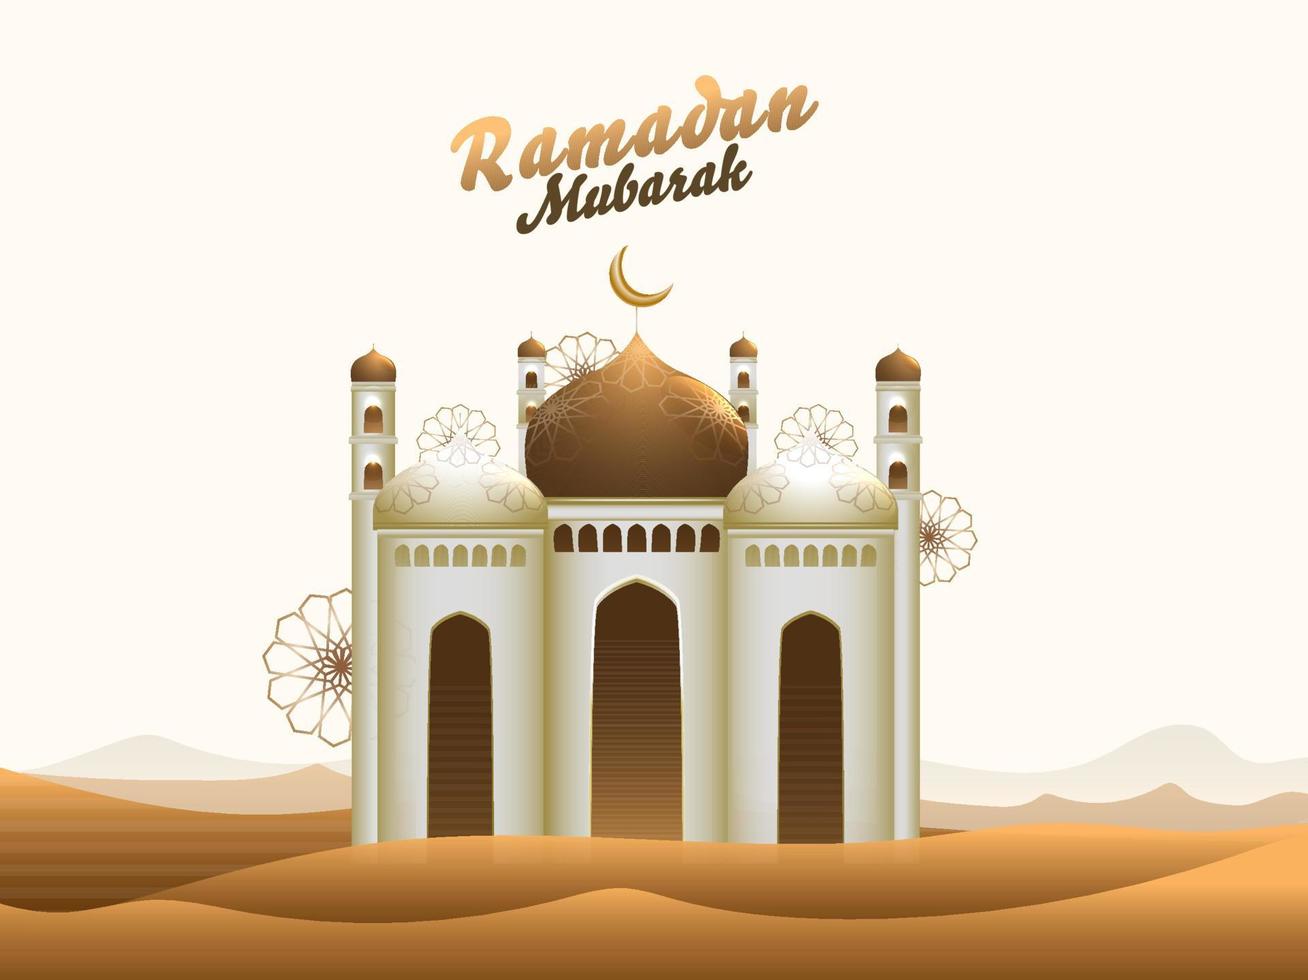 islamisch heilig Monat von Gebete, Ramadan kareem Konzept mit exquisit Moschee auf Wüste Hintergrund. vektor